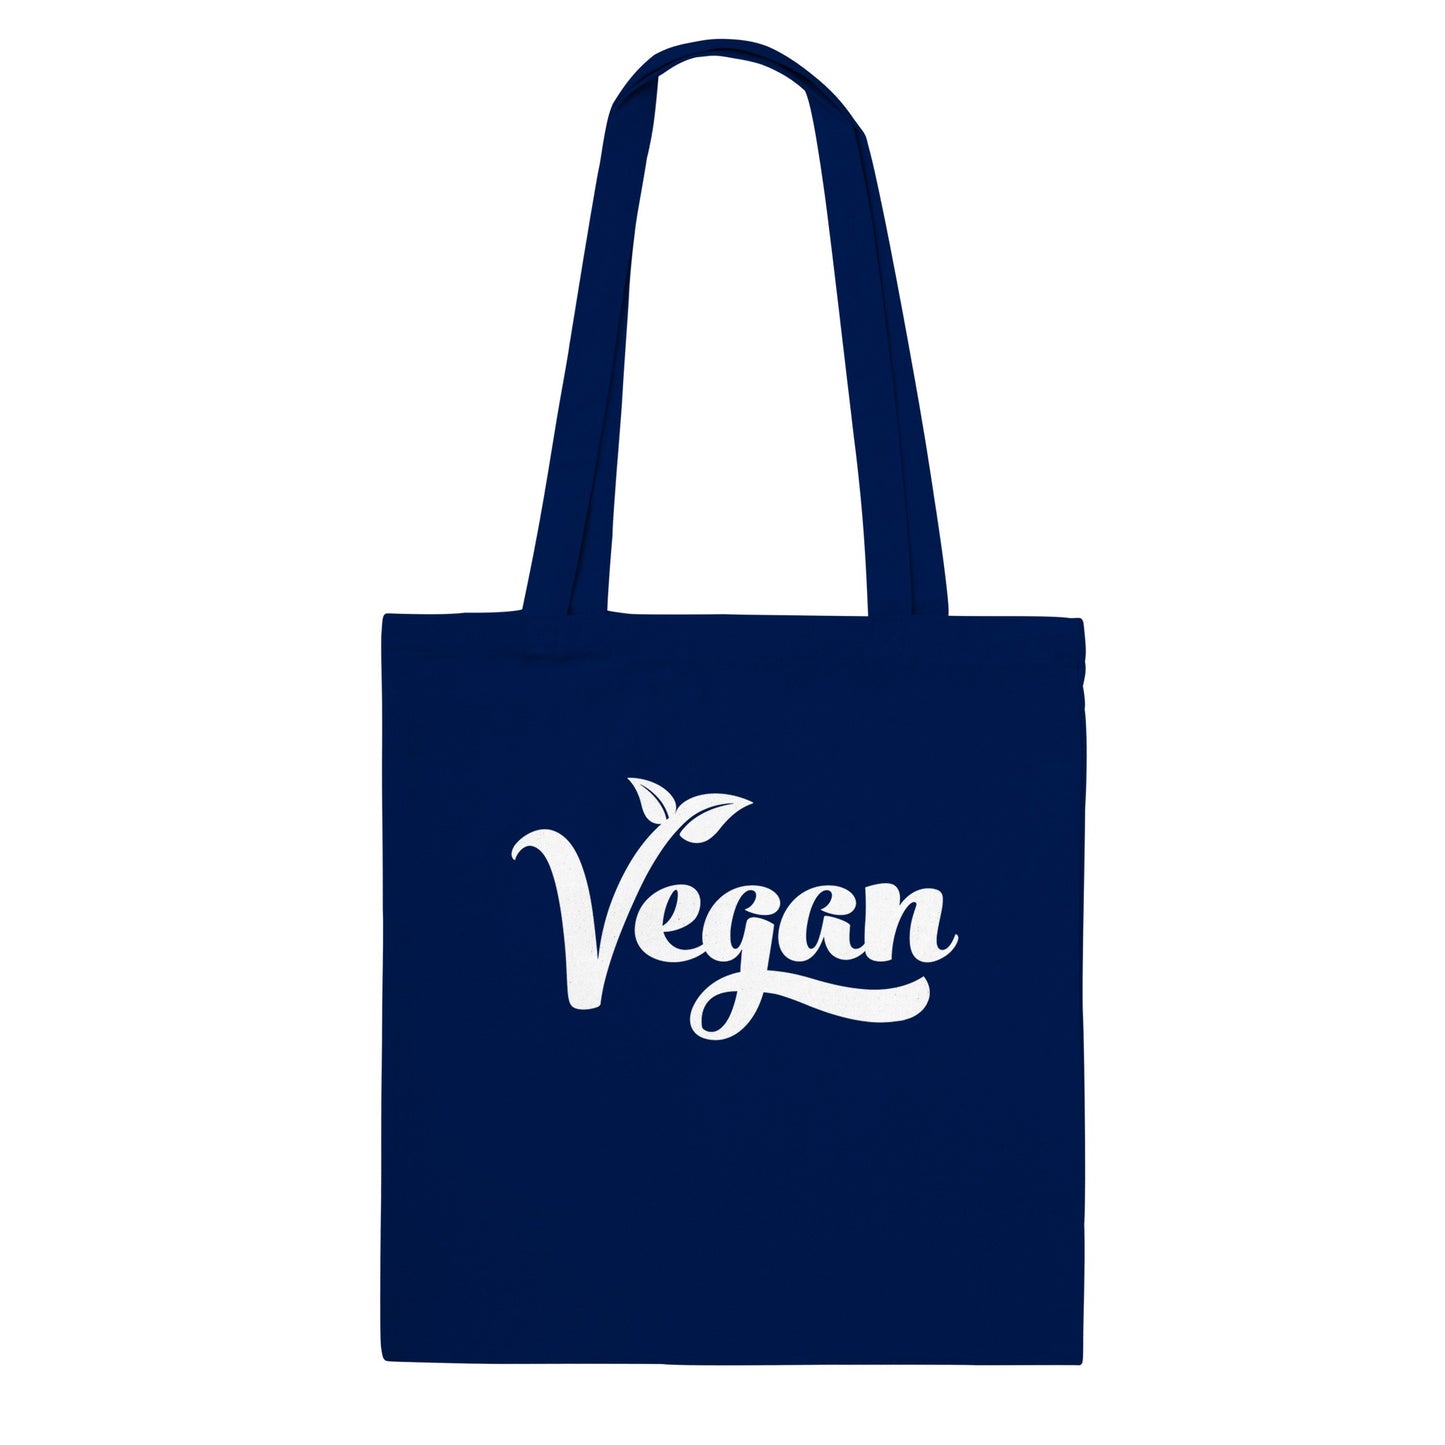 Vegan - Tote Bag